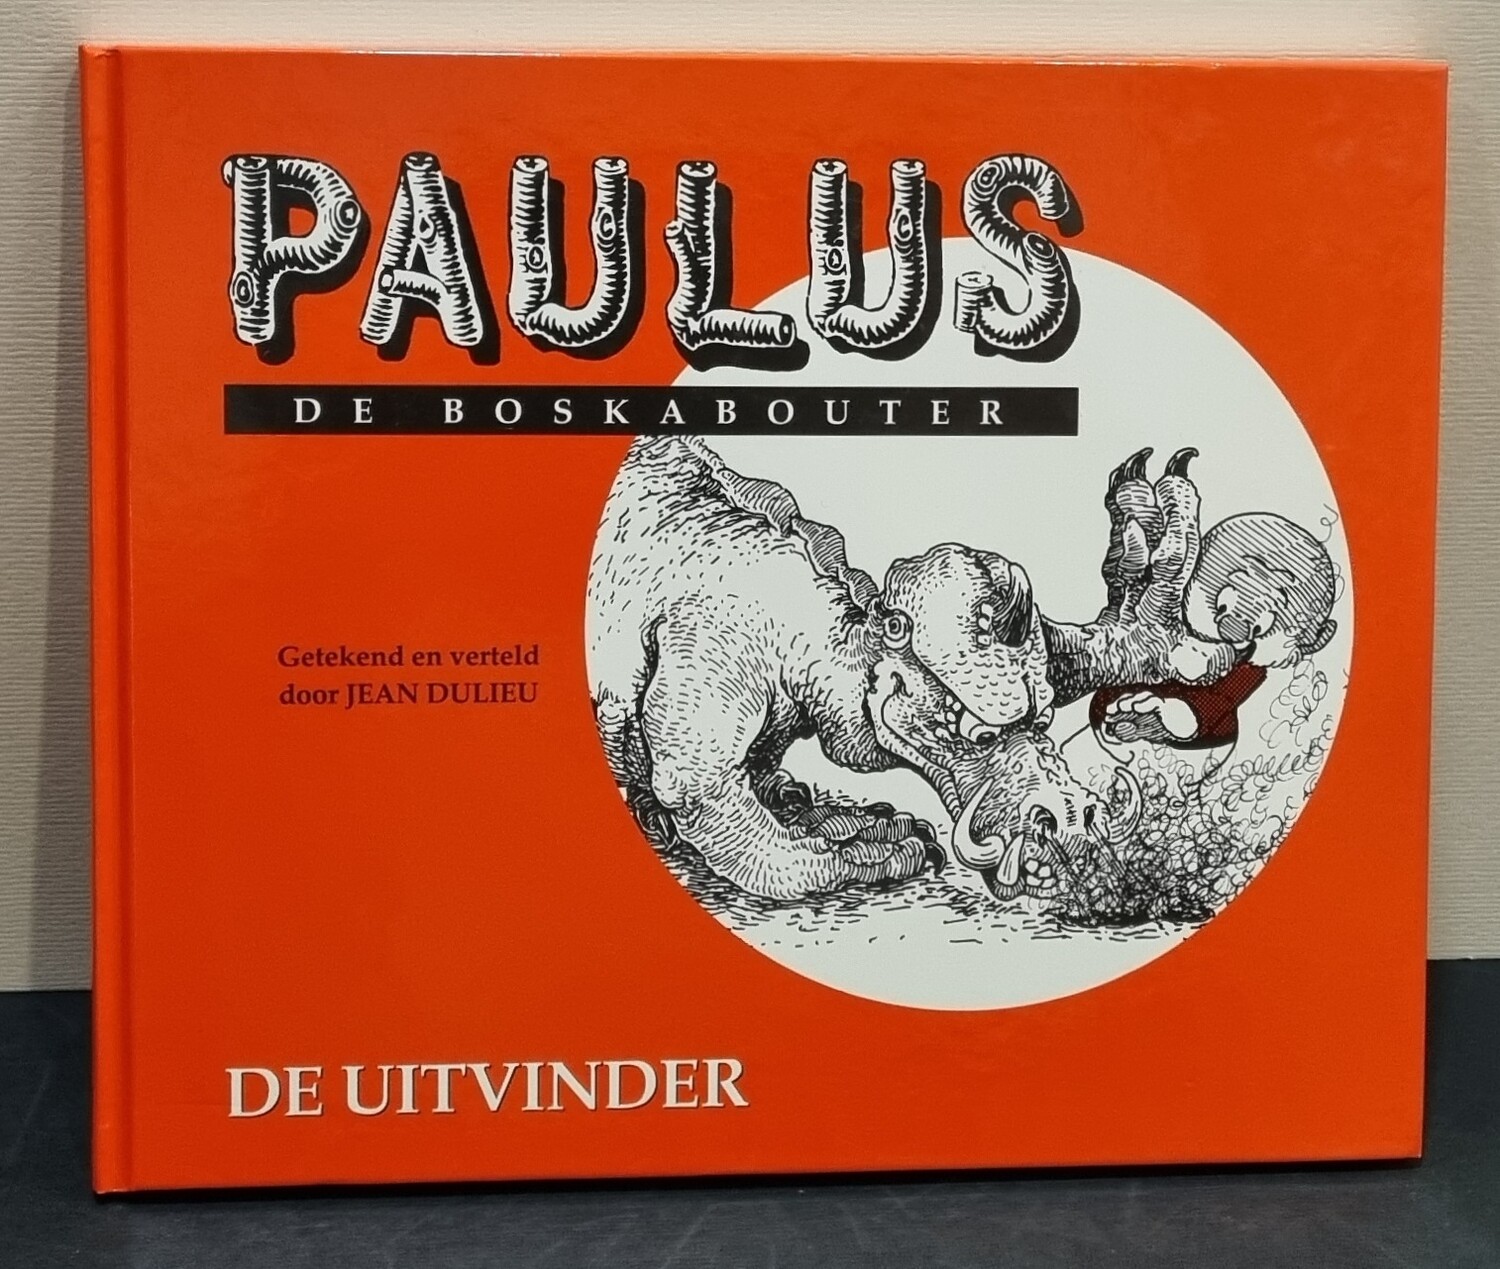 Paulus de Boskabouter, (Voorlees) Boek nr. 8, "De Uitvinder", Jean Dulieu